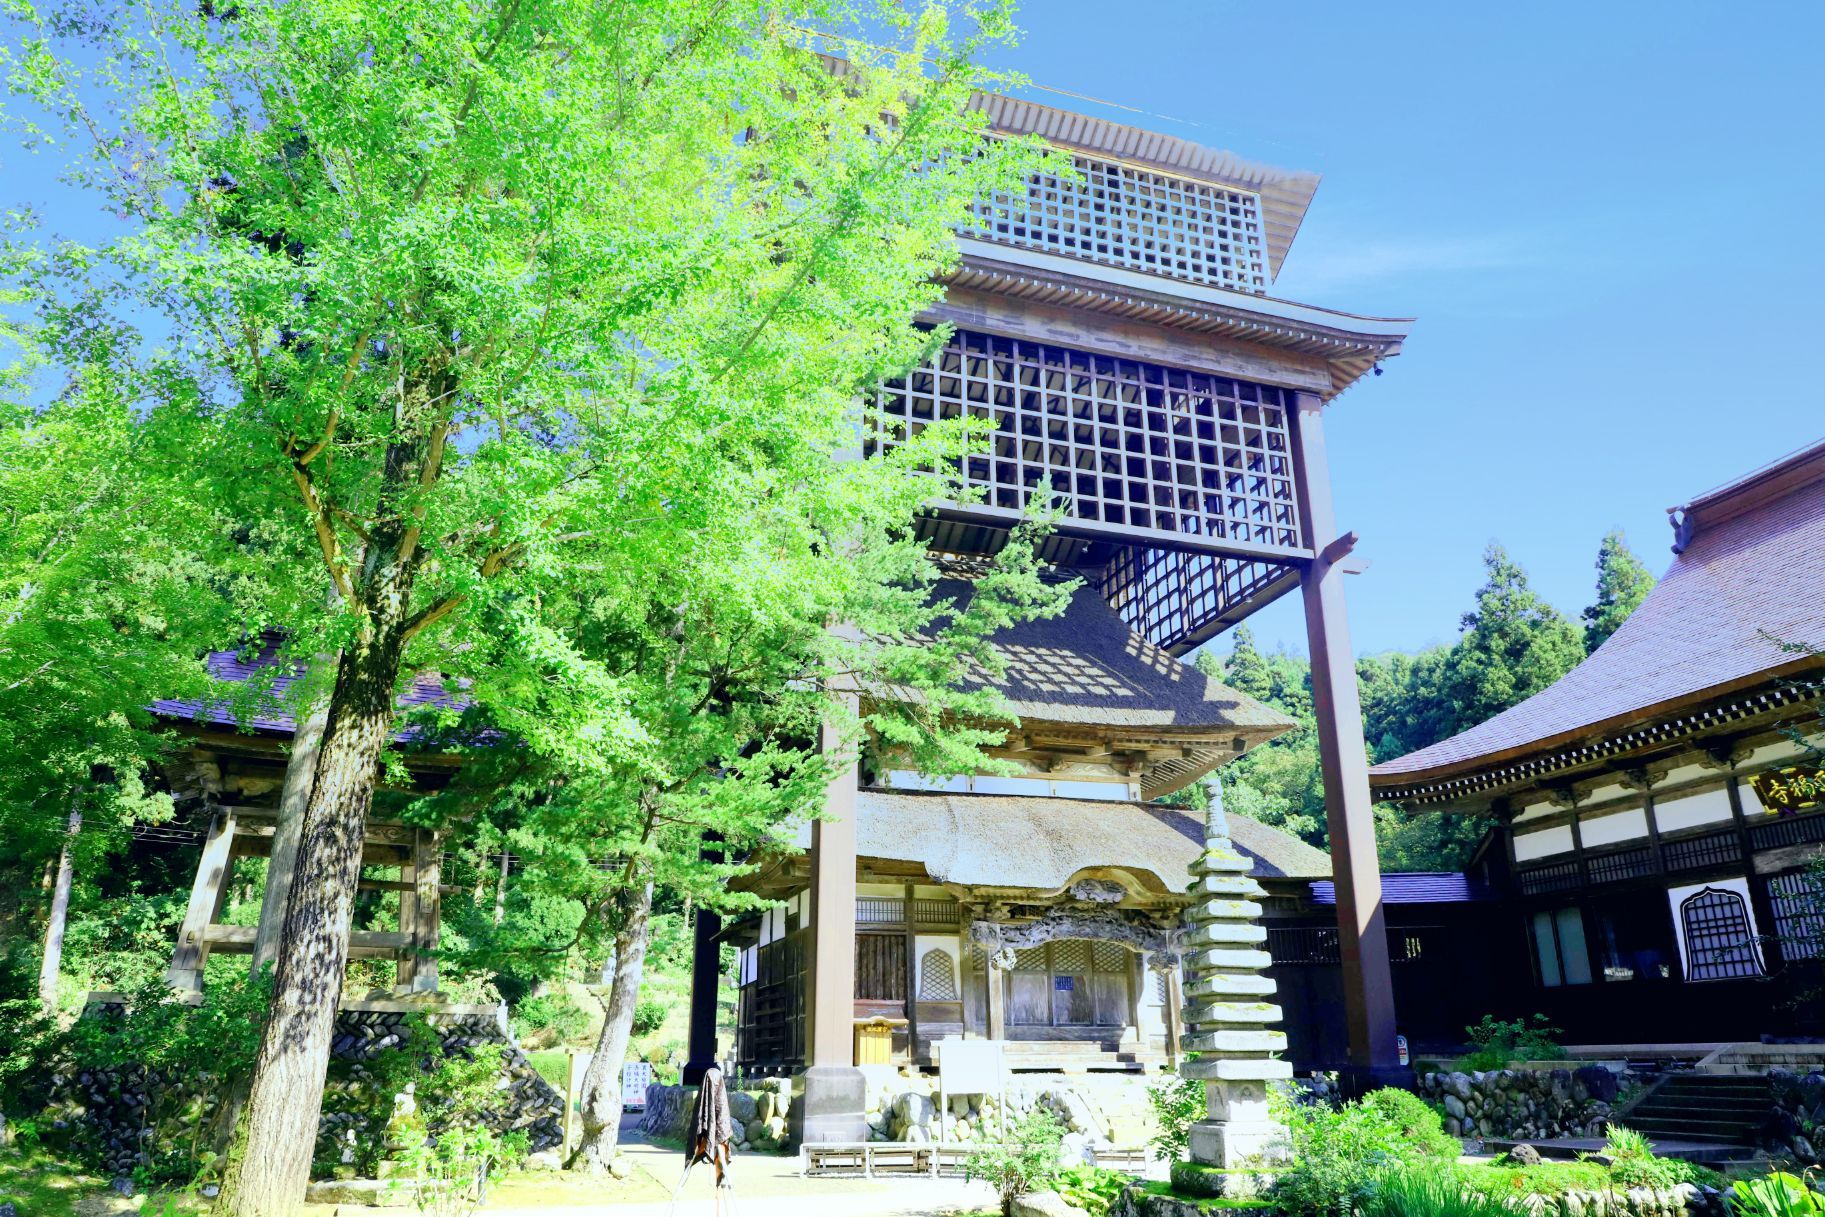 小众目的地📍日本赤城山西福寺 🎏 🎎这里封存着石川云蝶200年前的画作 🎏在日本，石川云蝶被称为“越